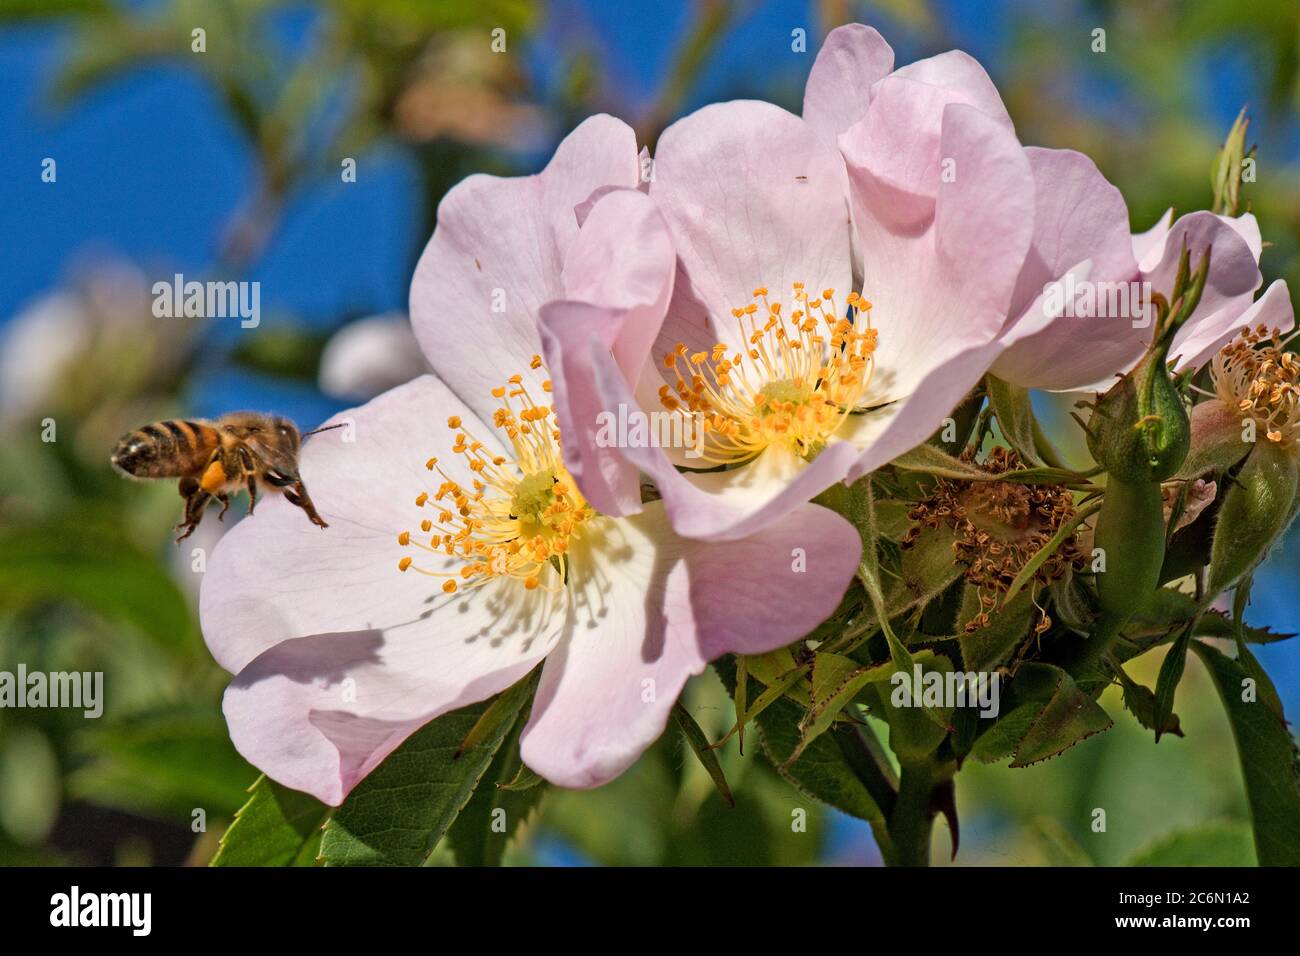 Eine Honigbiene (APIs mellifera), die eine rosa Blume einer Hundsrose (Rosa canina) auf einer hellen Quelle mit gelben Anthern besucht, Berkshire, Mai Stockfoto